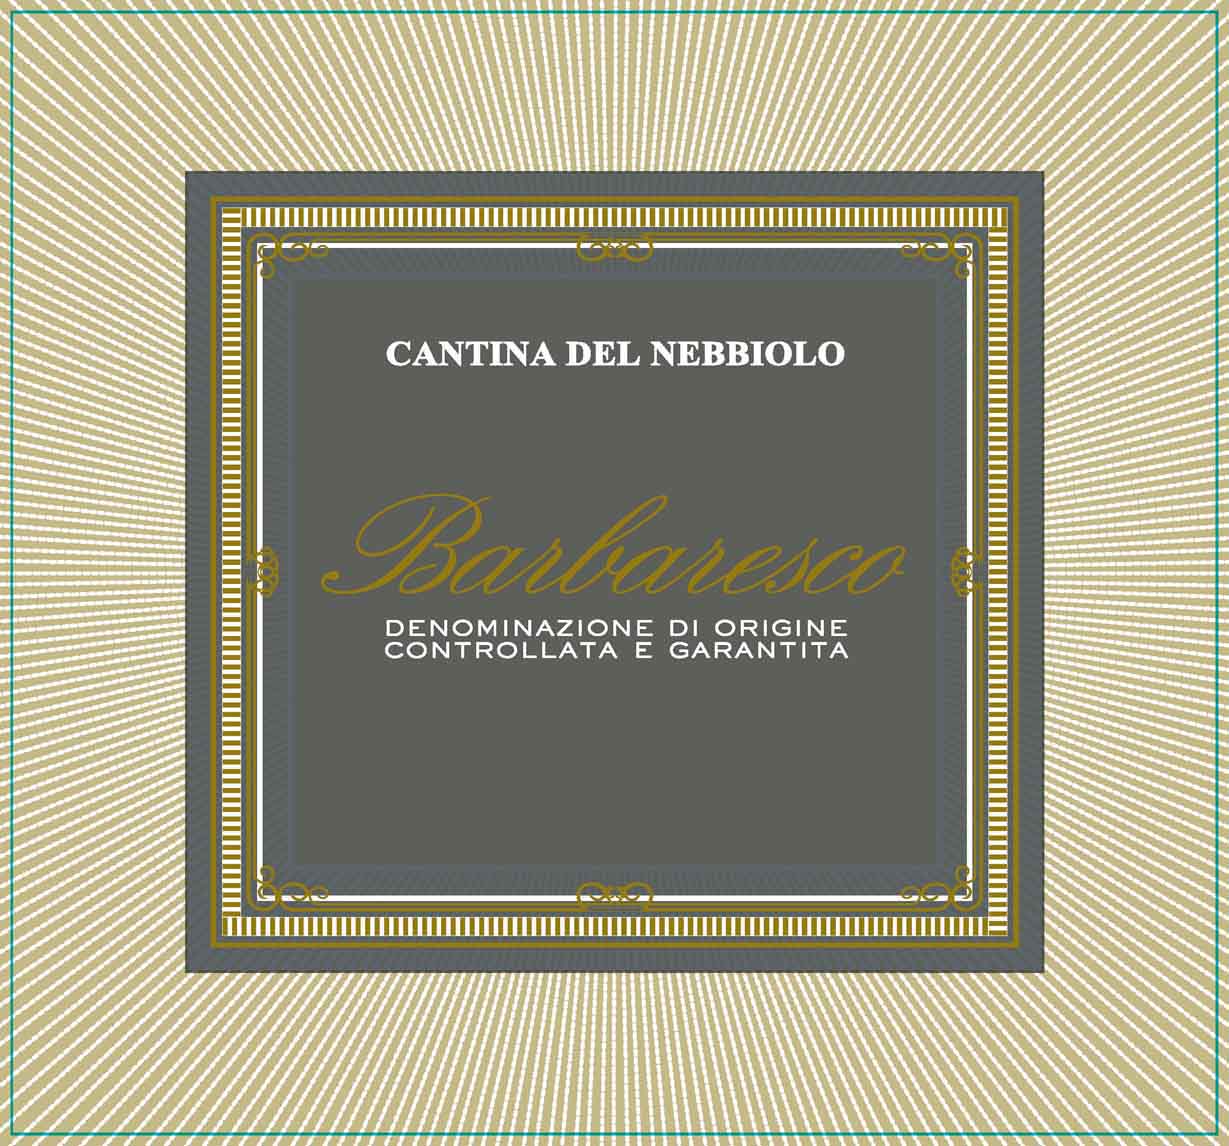 Cantina del Nebbiolo - Barbaresco label